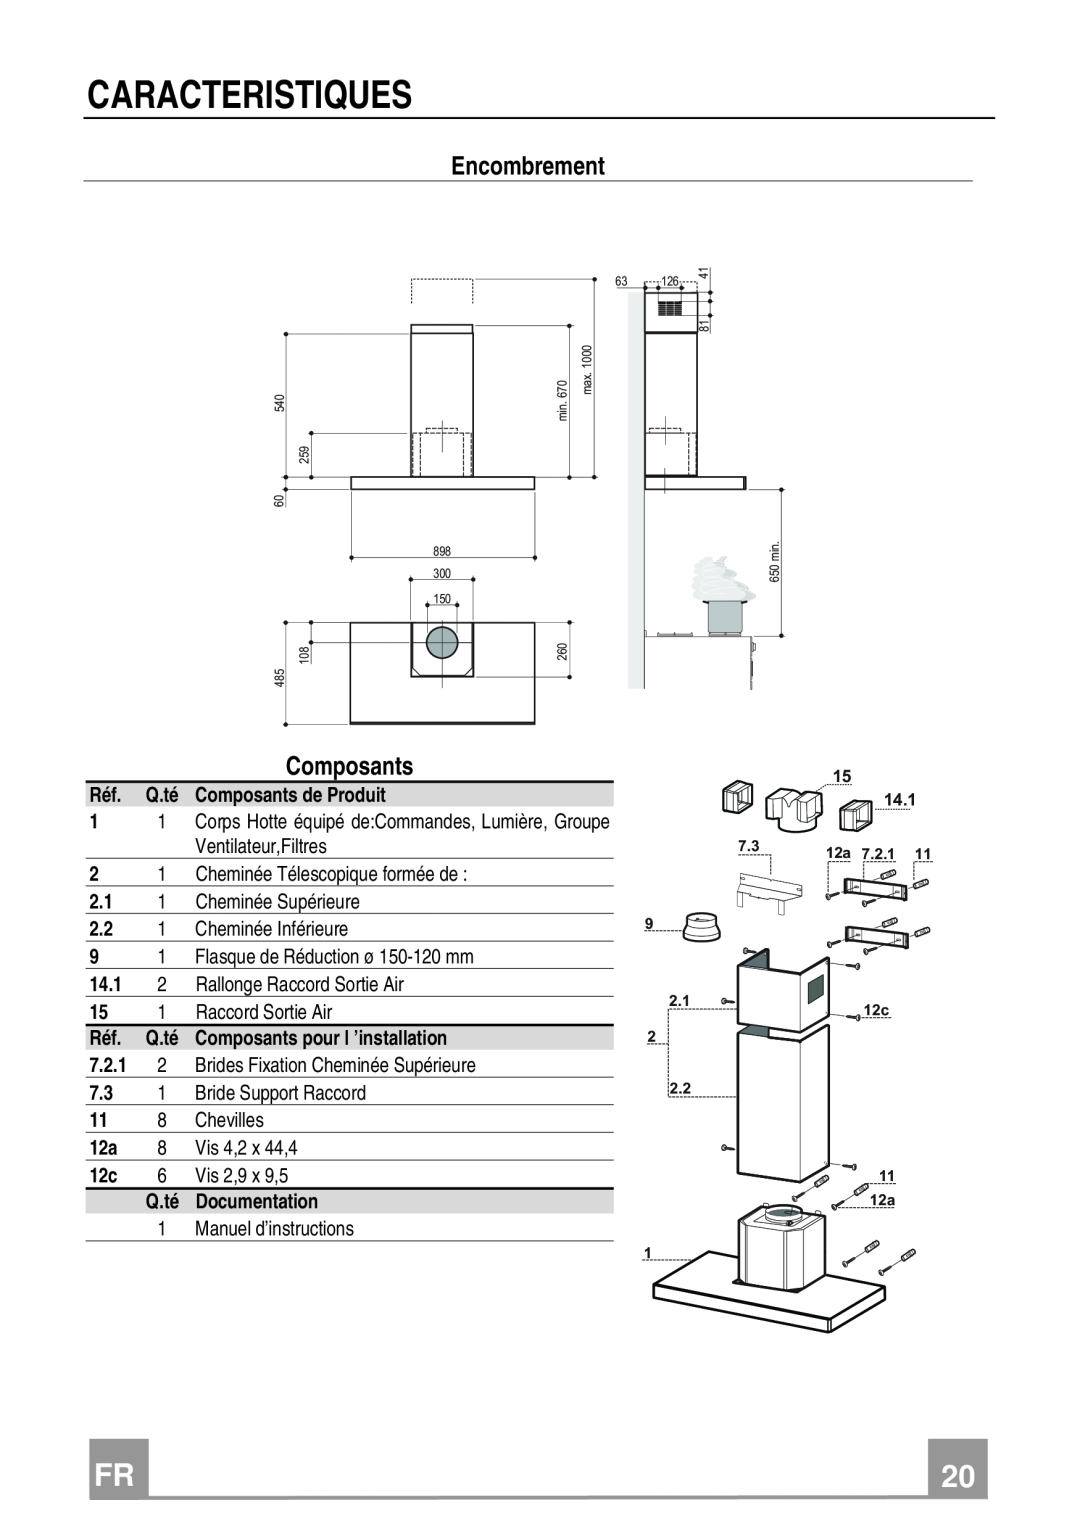 Franke Consumer Products FCR 908 TC manual Caracteristiques, Encombrement, Composants 